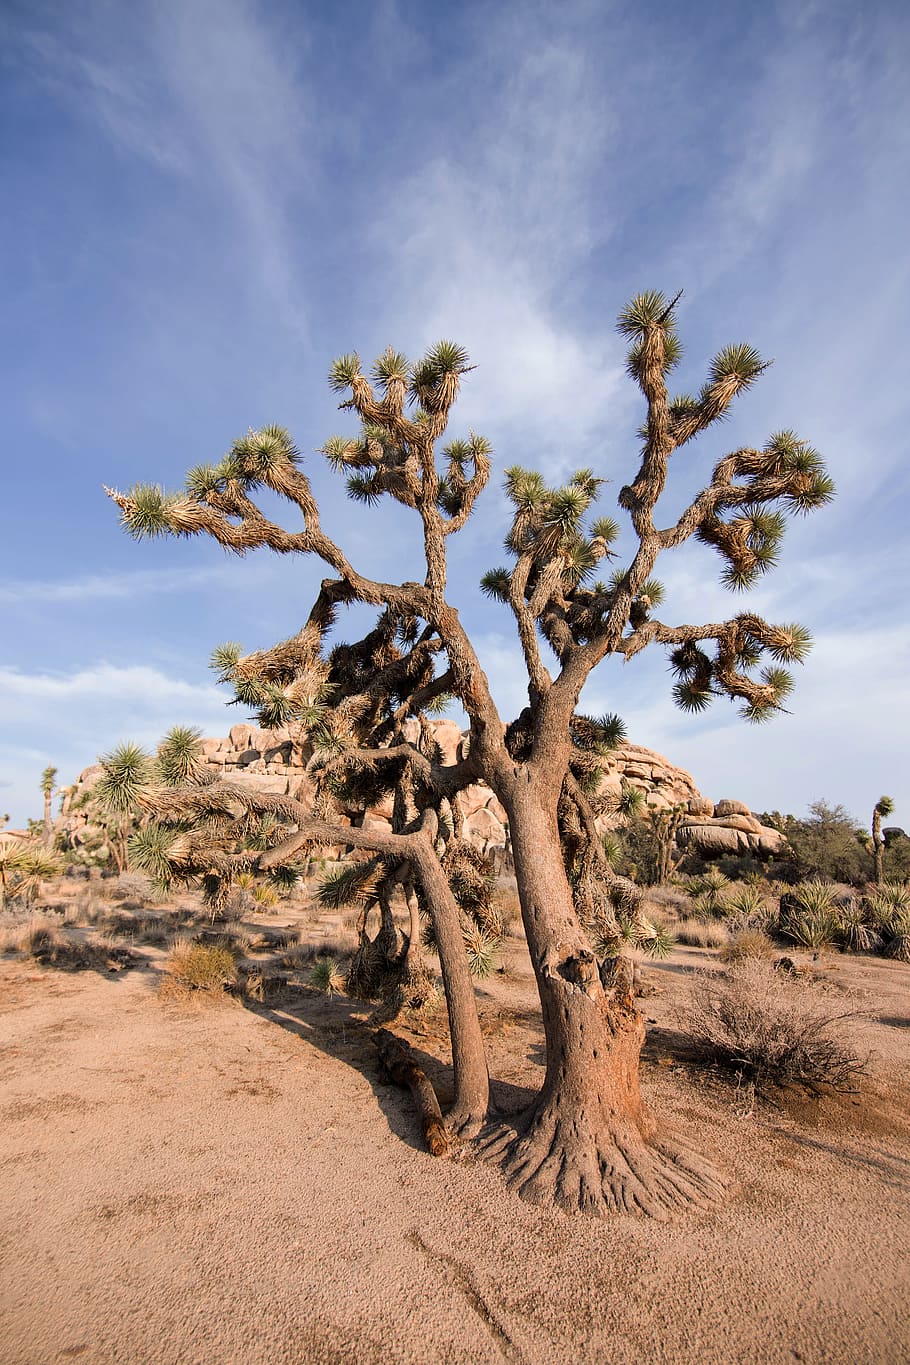 ジョシュアツリー 国立公園 砂漠 自然 夏 木 植物 乾燥した気候 風景 空 Pxfuel